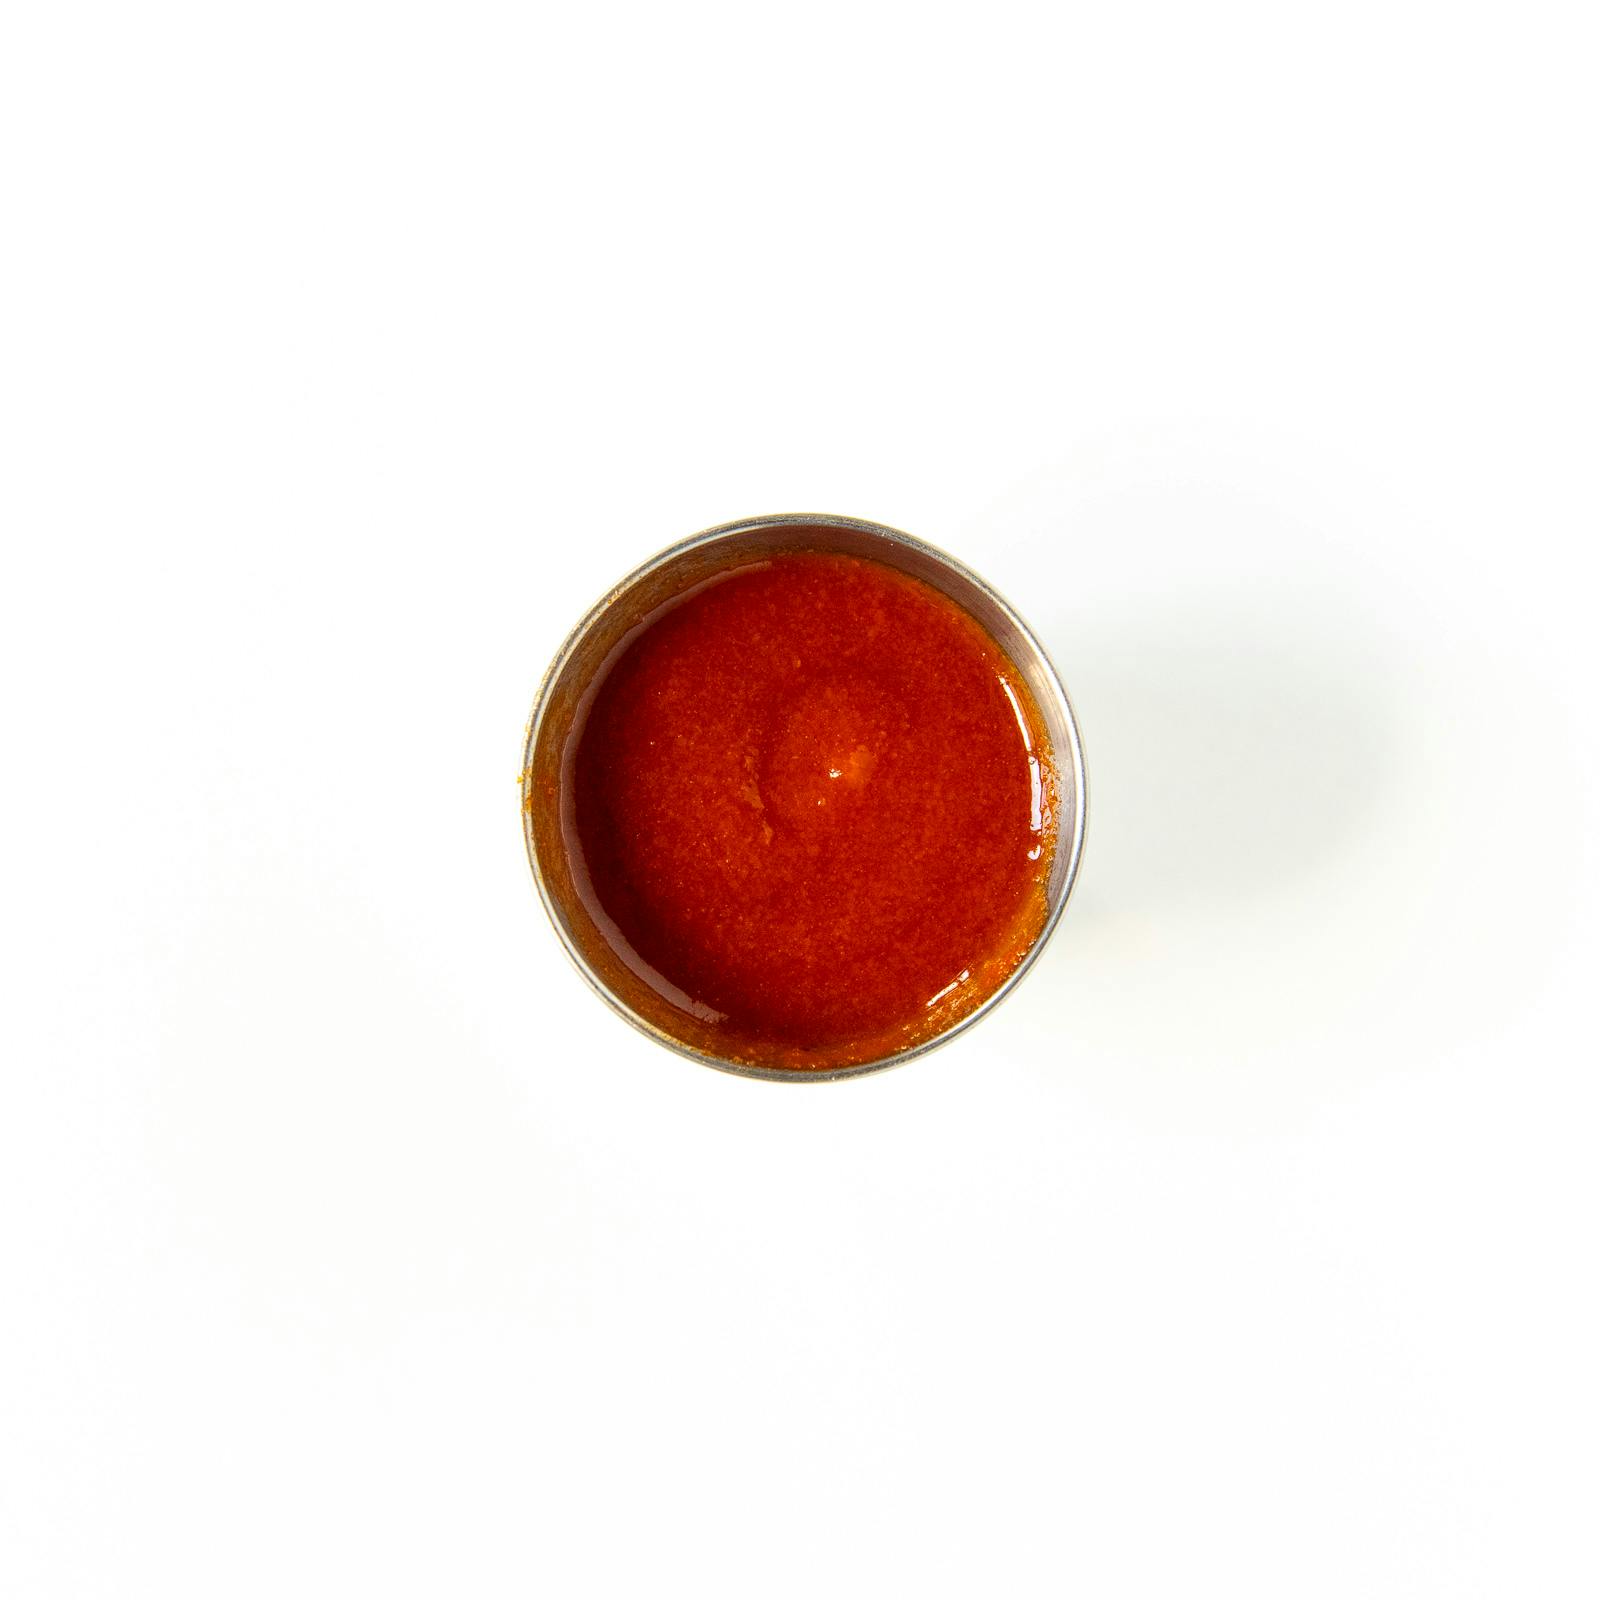 Honey Garlic Sriracha Sauce from Midcoast Wings - N Main St in Oshkosh, WI